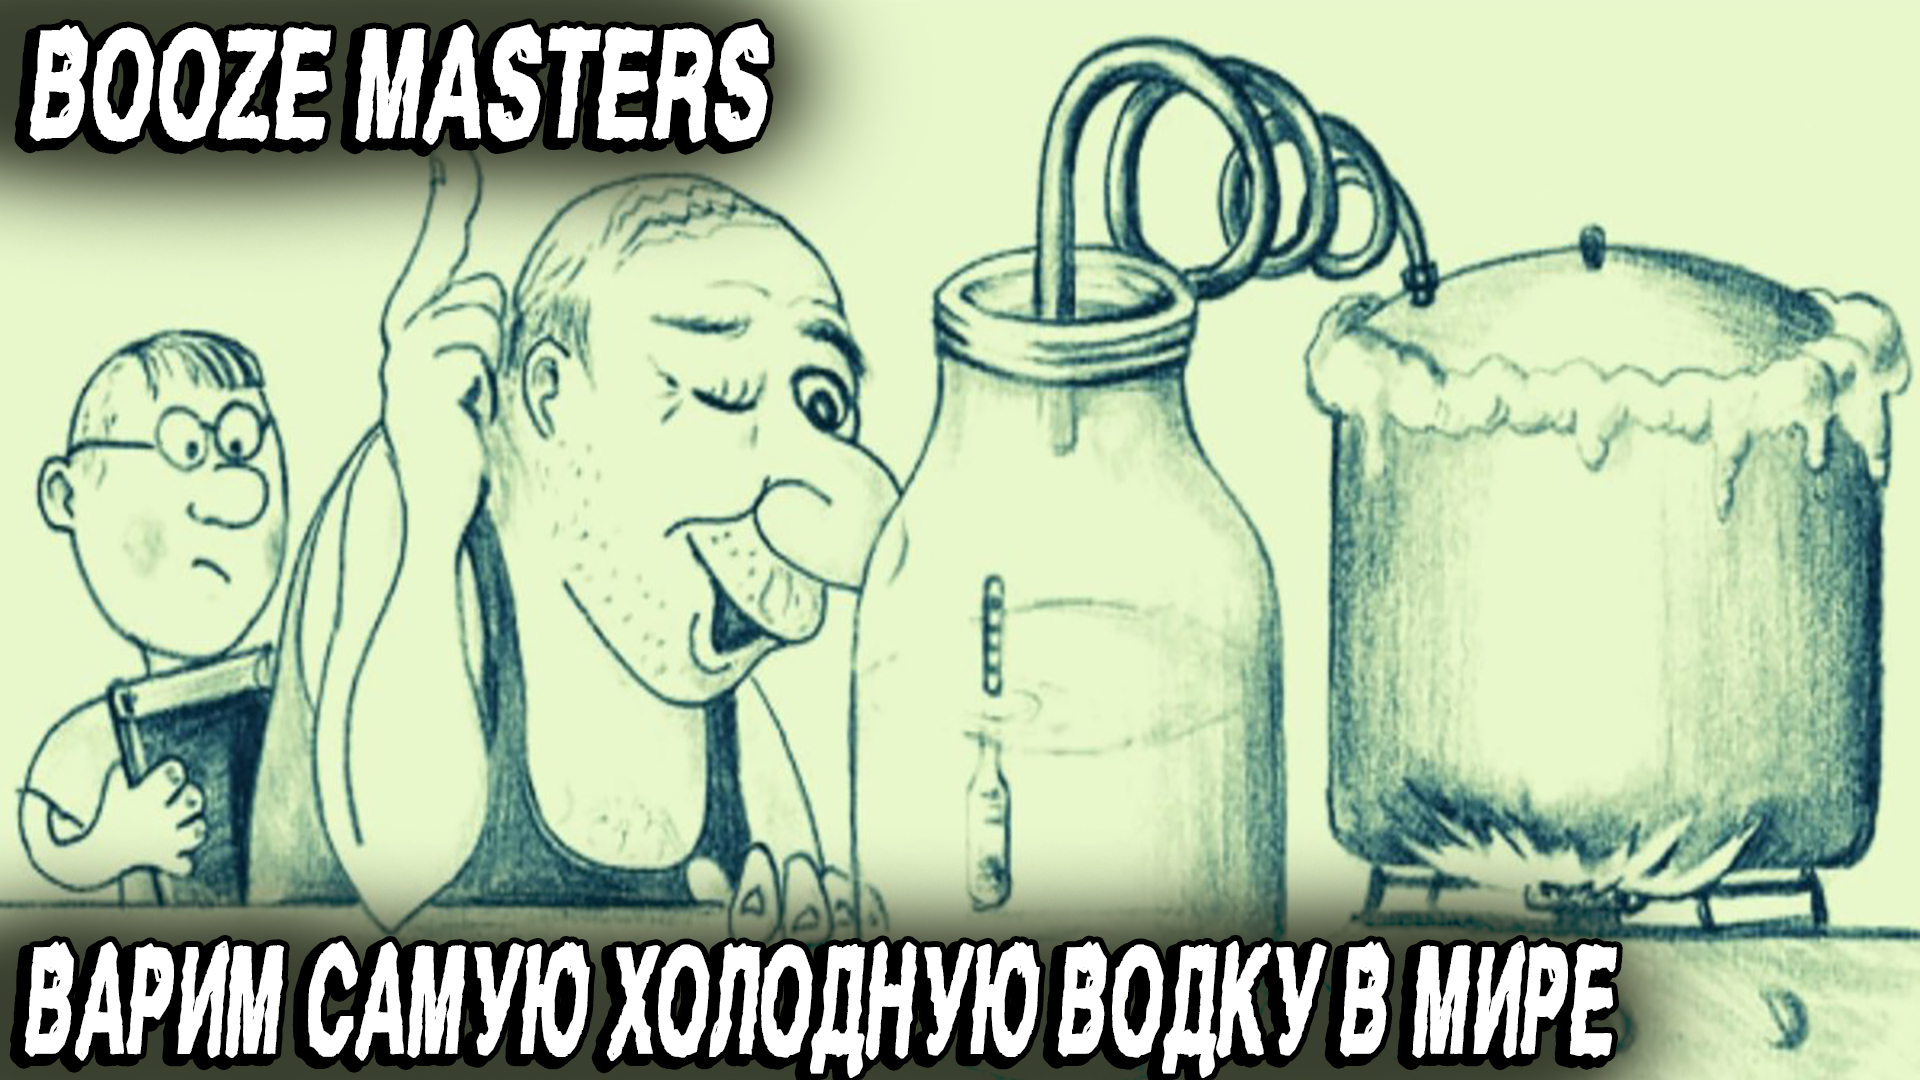 Booze Masters Freezing Moonshine - прохождение демки самого мистического симулятора самогонoварения